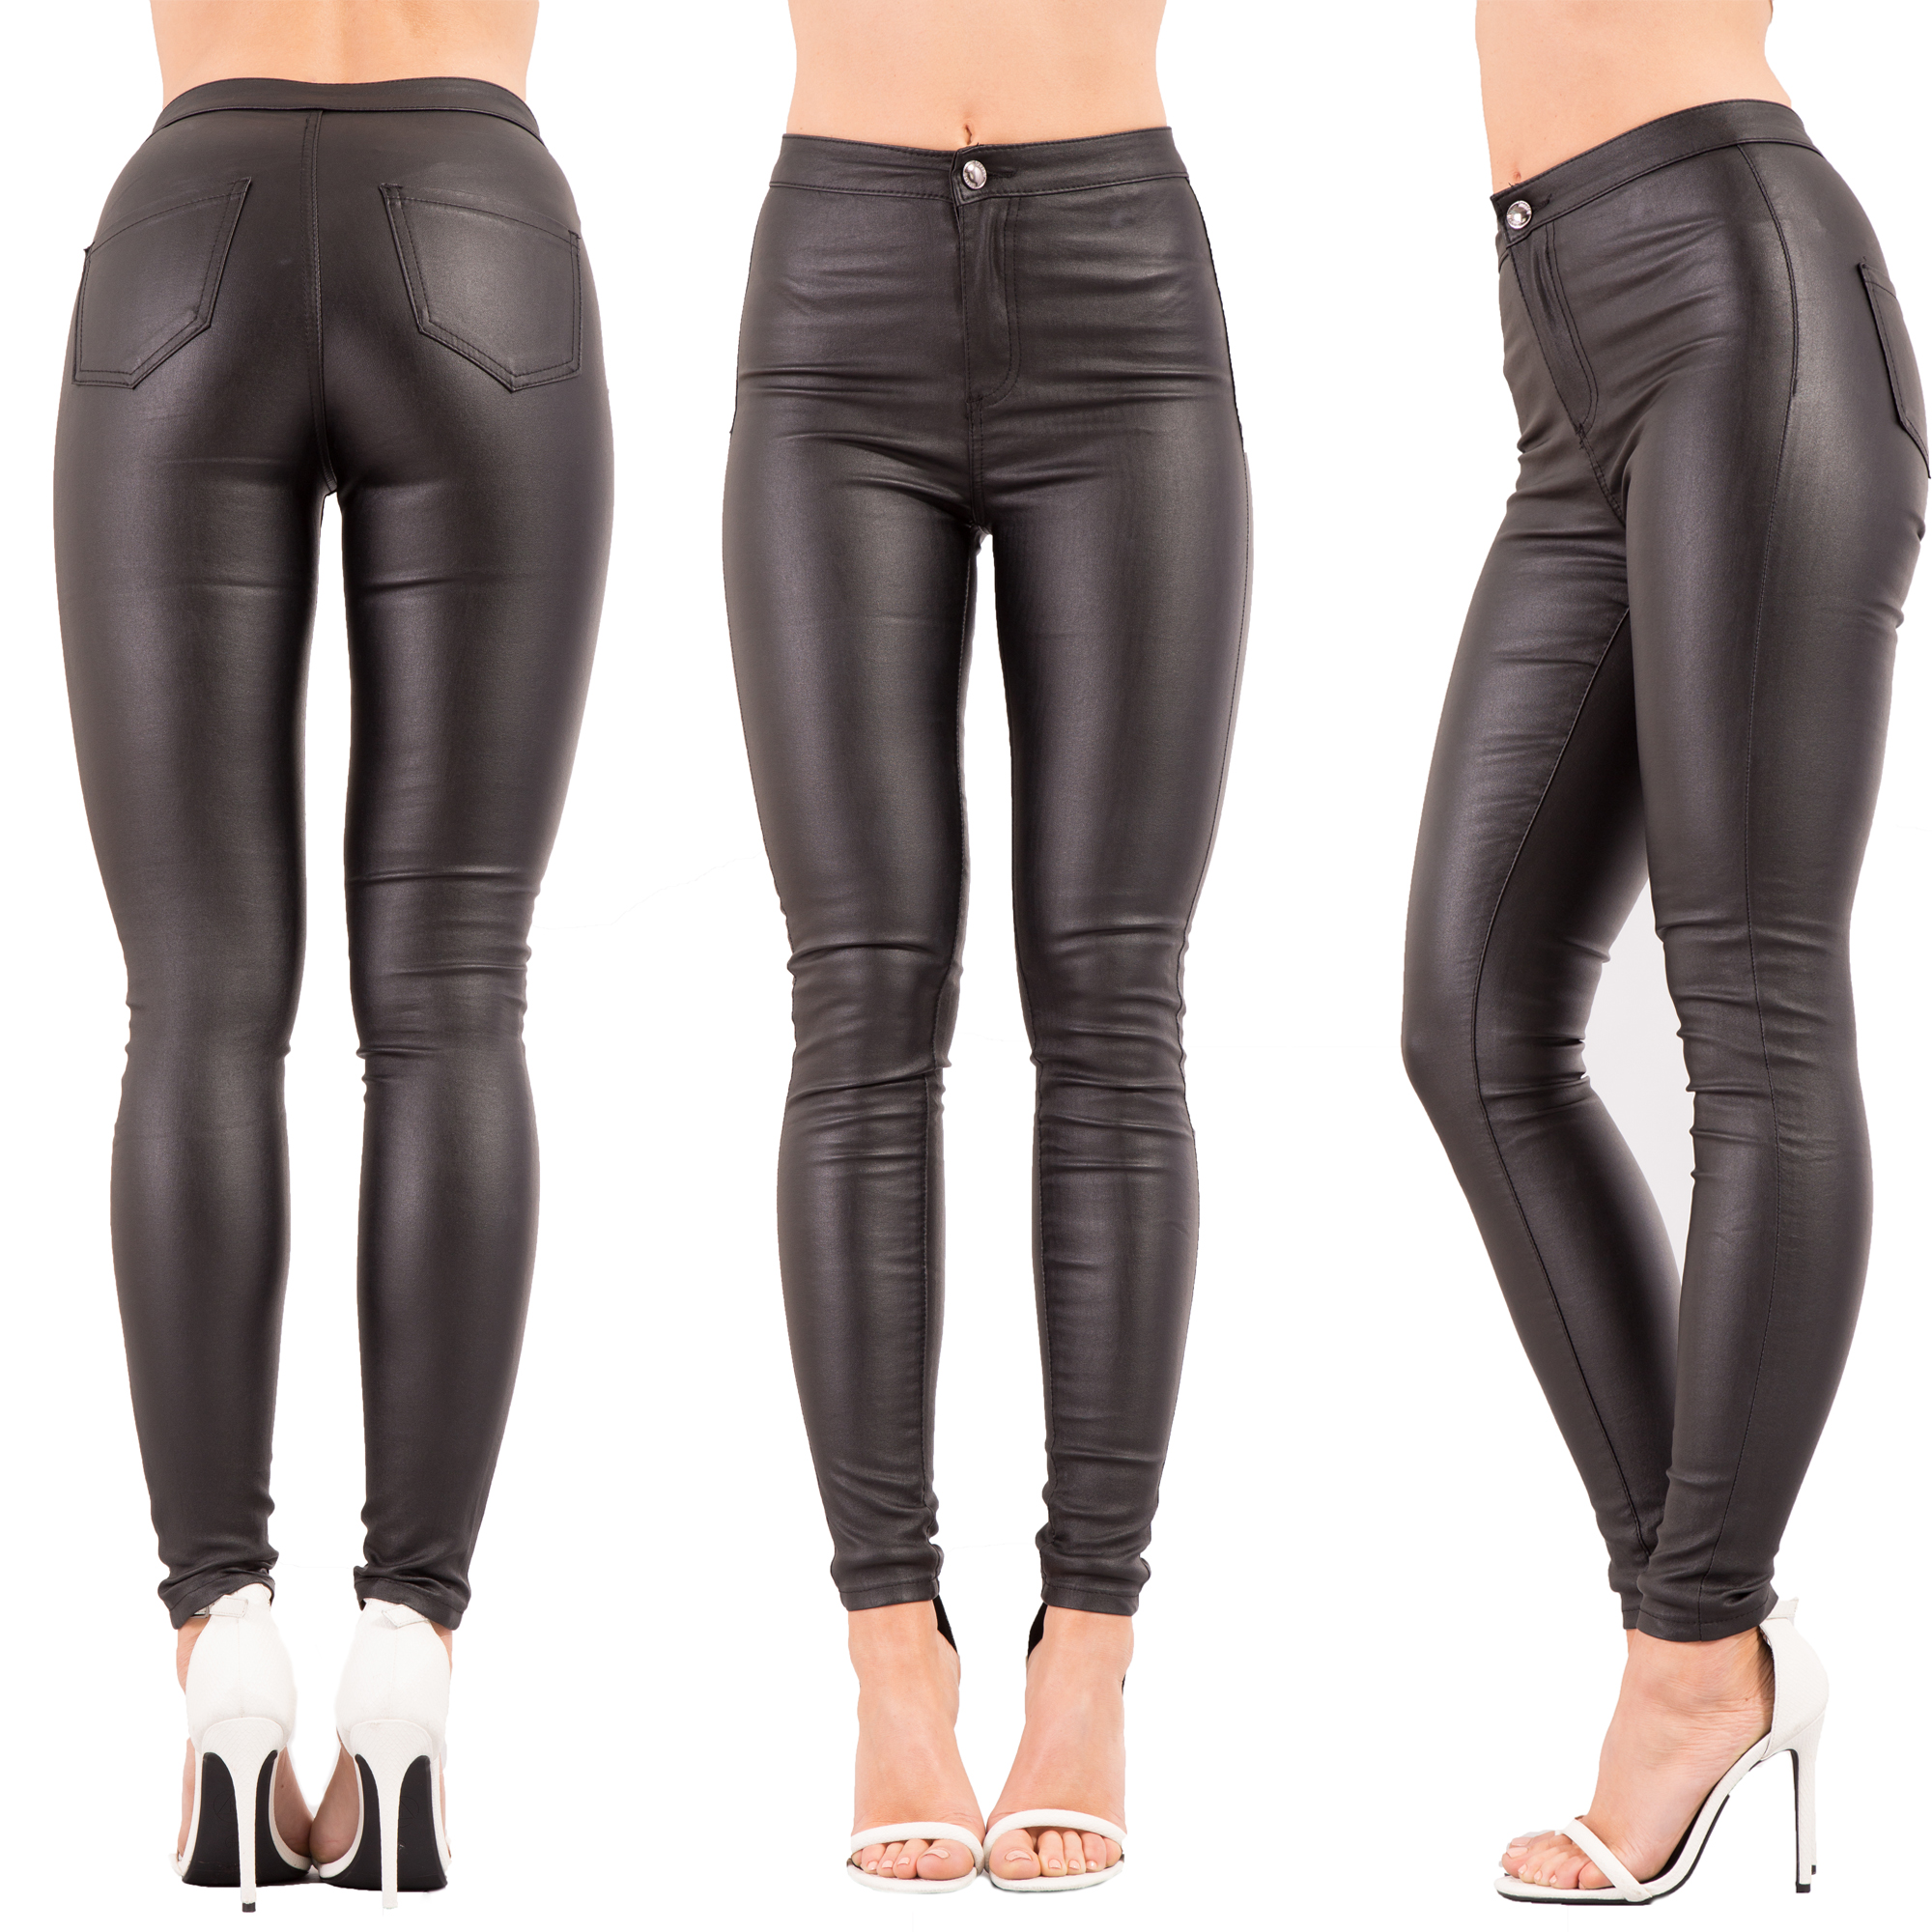 Aankoop >ladies size 6 black trousers Grote uitverkoop - OFF 67%